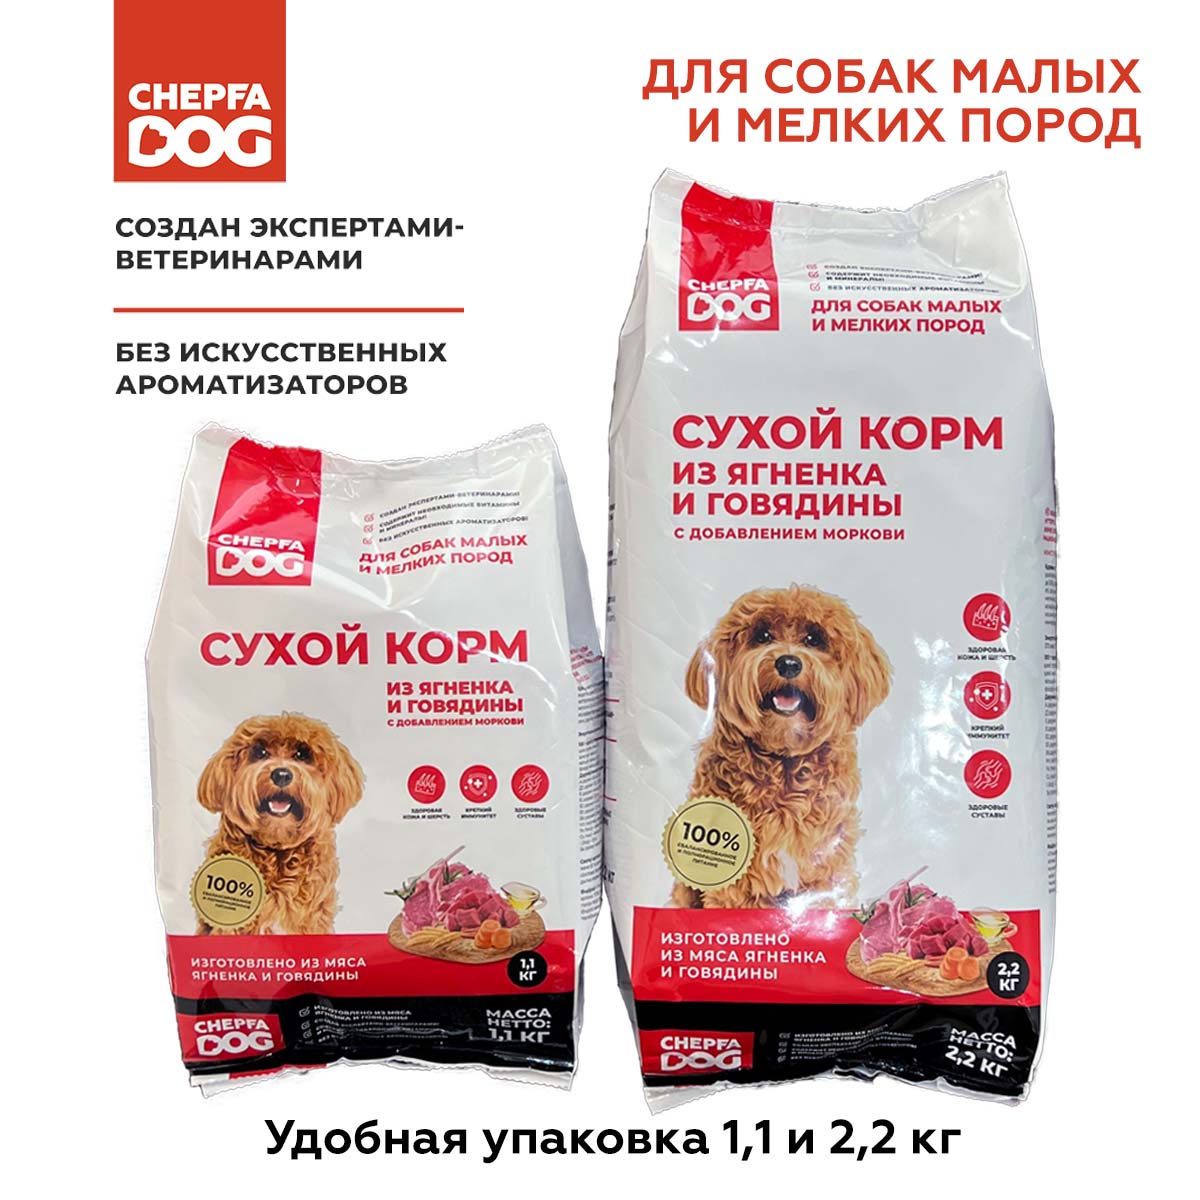 Сухой корм для собак Chepfa Dog Полнорационный ягненок и говядина 2.2 кг для взрослых собак малых и мелких пород - фото 7